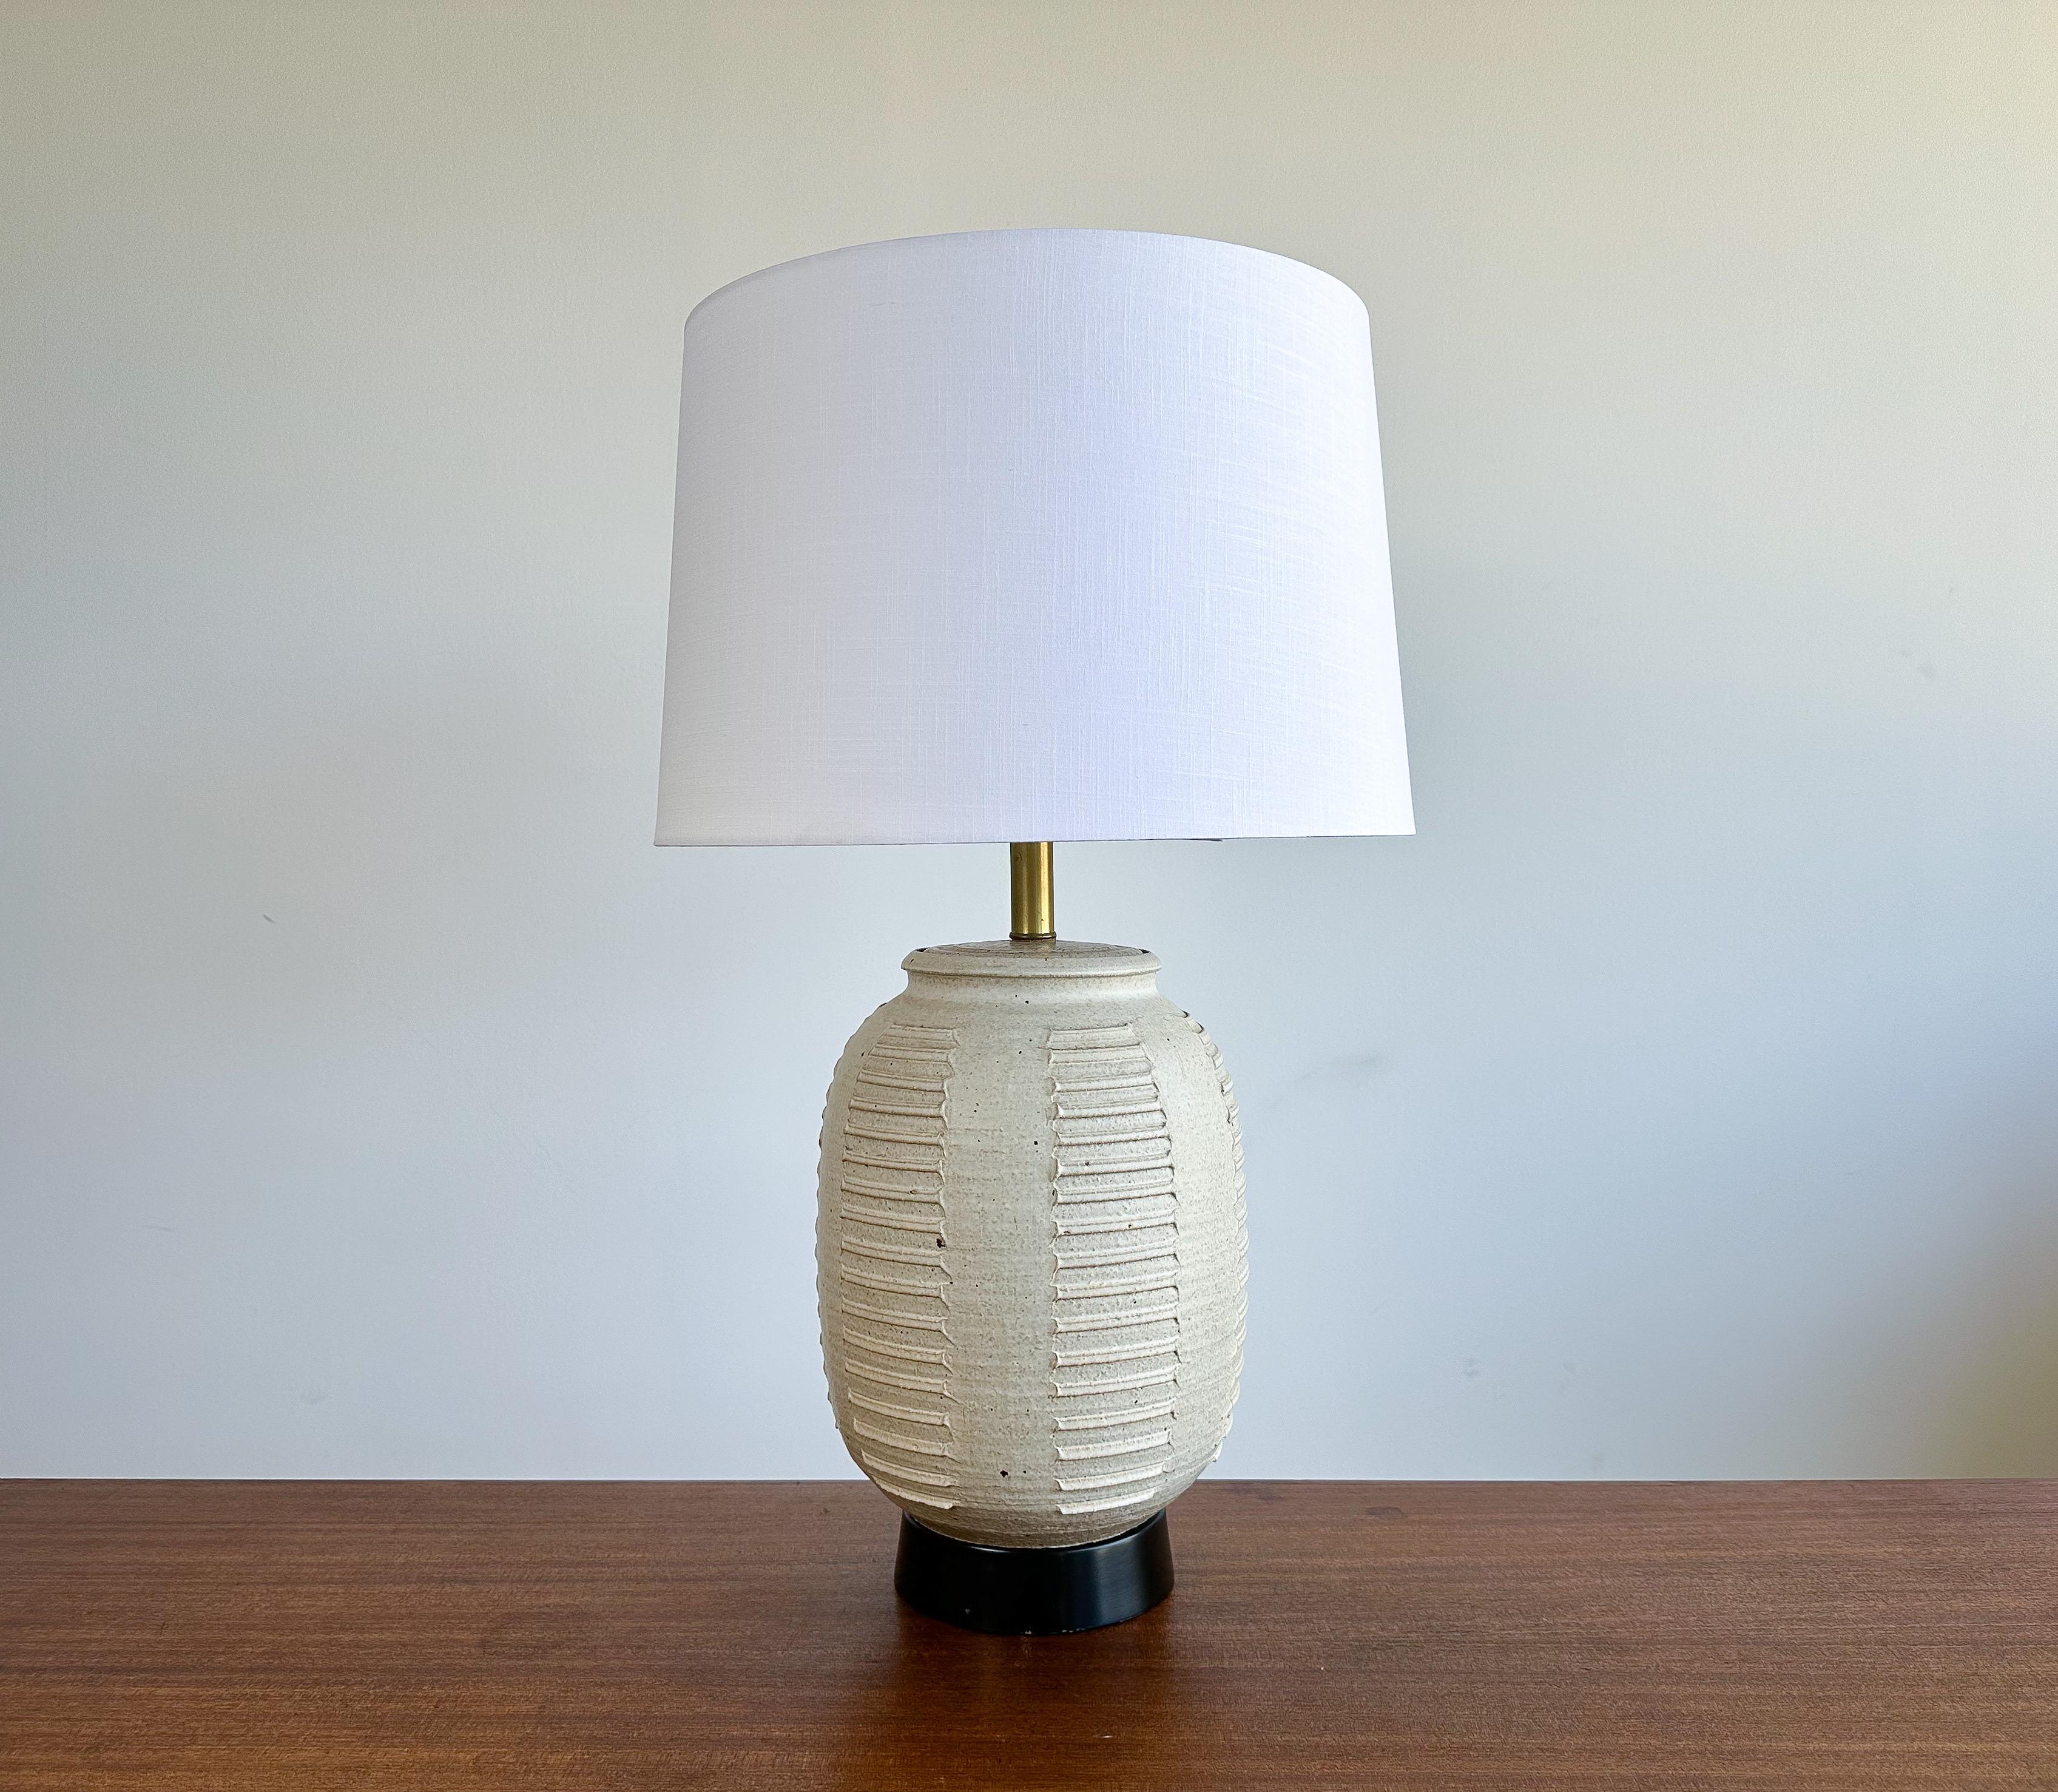 Cette lampe en céramique incisée faite à la main par Bob Kinzie pour Affiliated Craftsmen est proposée vers les années 1960.

Une forme superbe et des détails incisés en font un candidat idéal si vous souhaitez une lampe de table unique. Nouveau